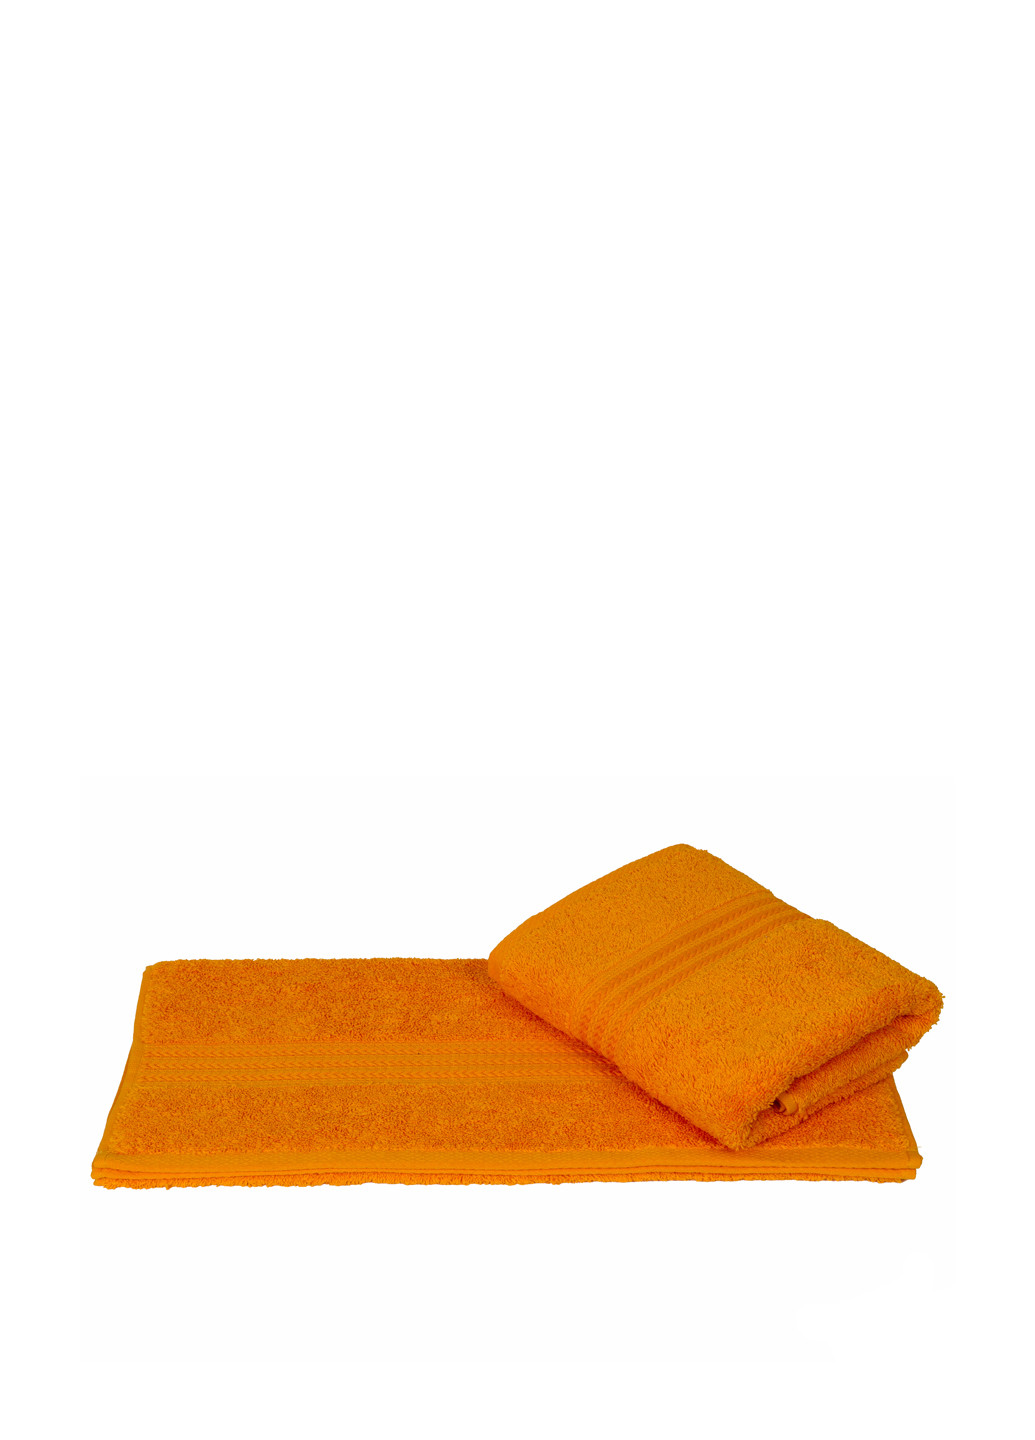 Hobby полотенце, 50х90 см полоска оранжево-красный производство - Турция